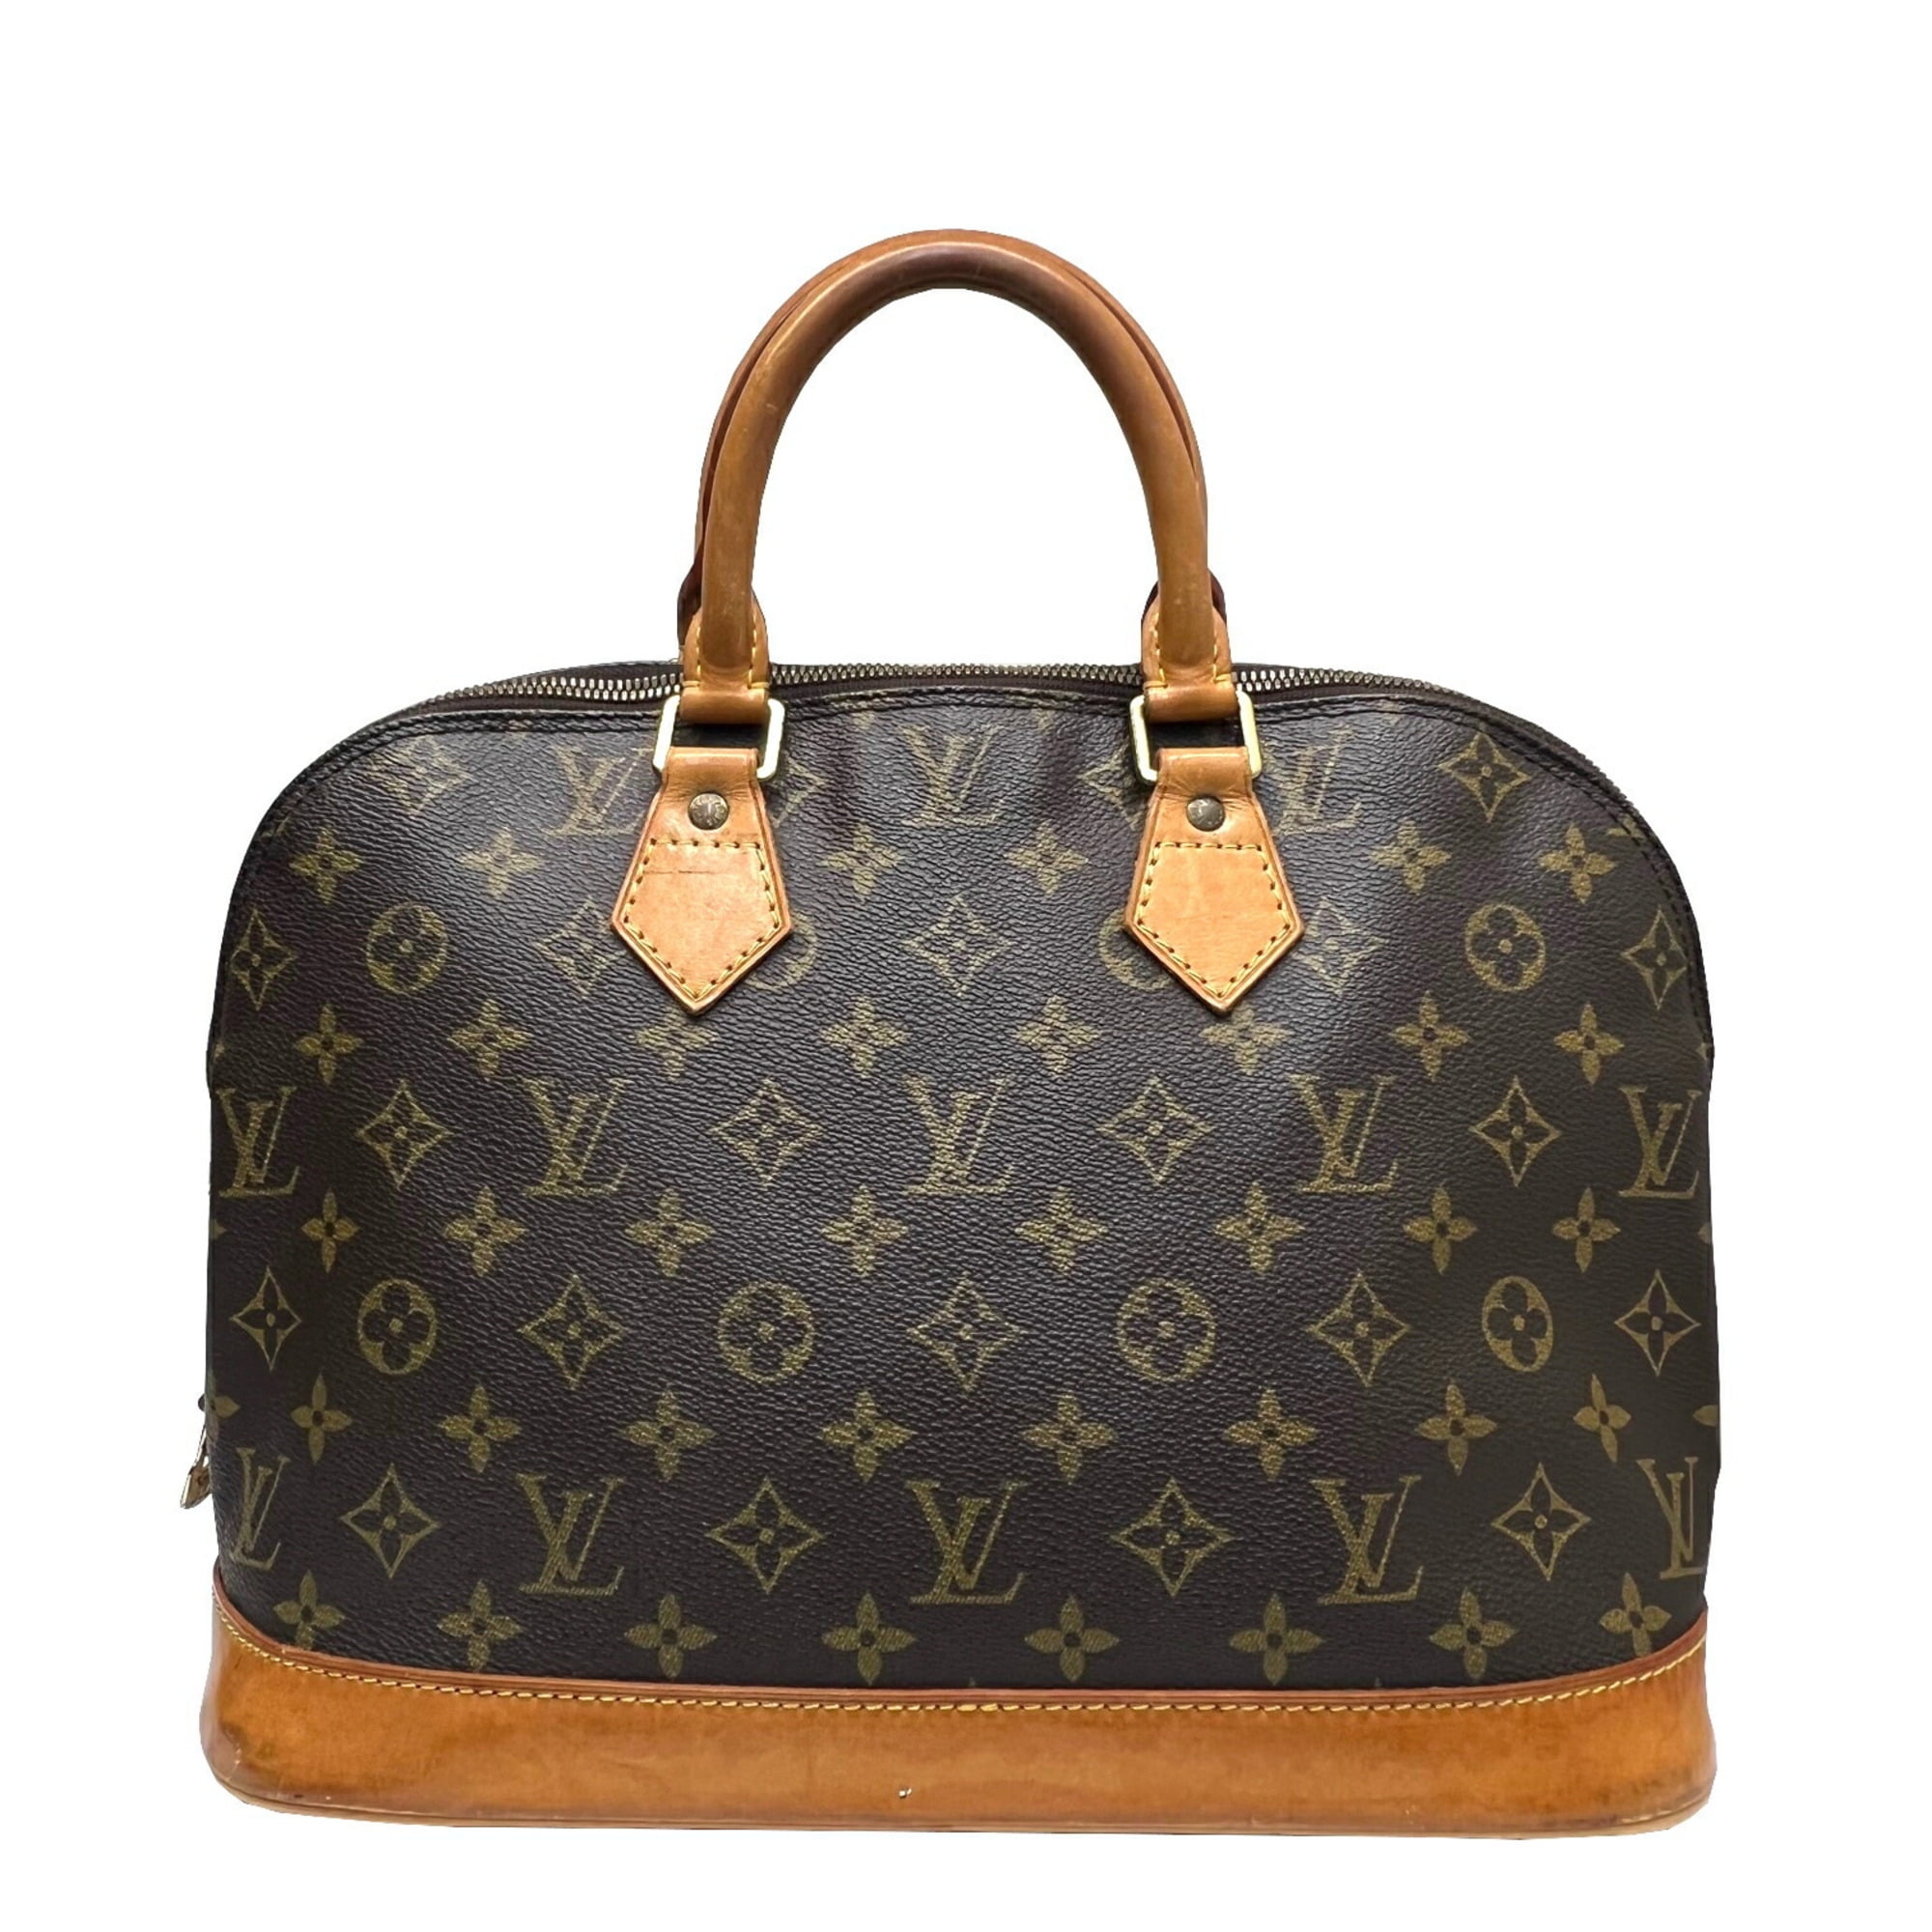 Authenticated used Louis Vuitton Louis Vuitton Alma PM Brown Monogram M53151 Vi0924 Handbag Classic Popular Women's, Adult Unisex, Size: (HxWxD): 24cm